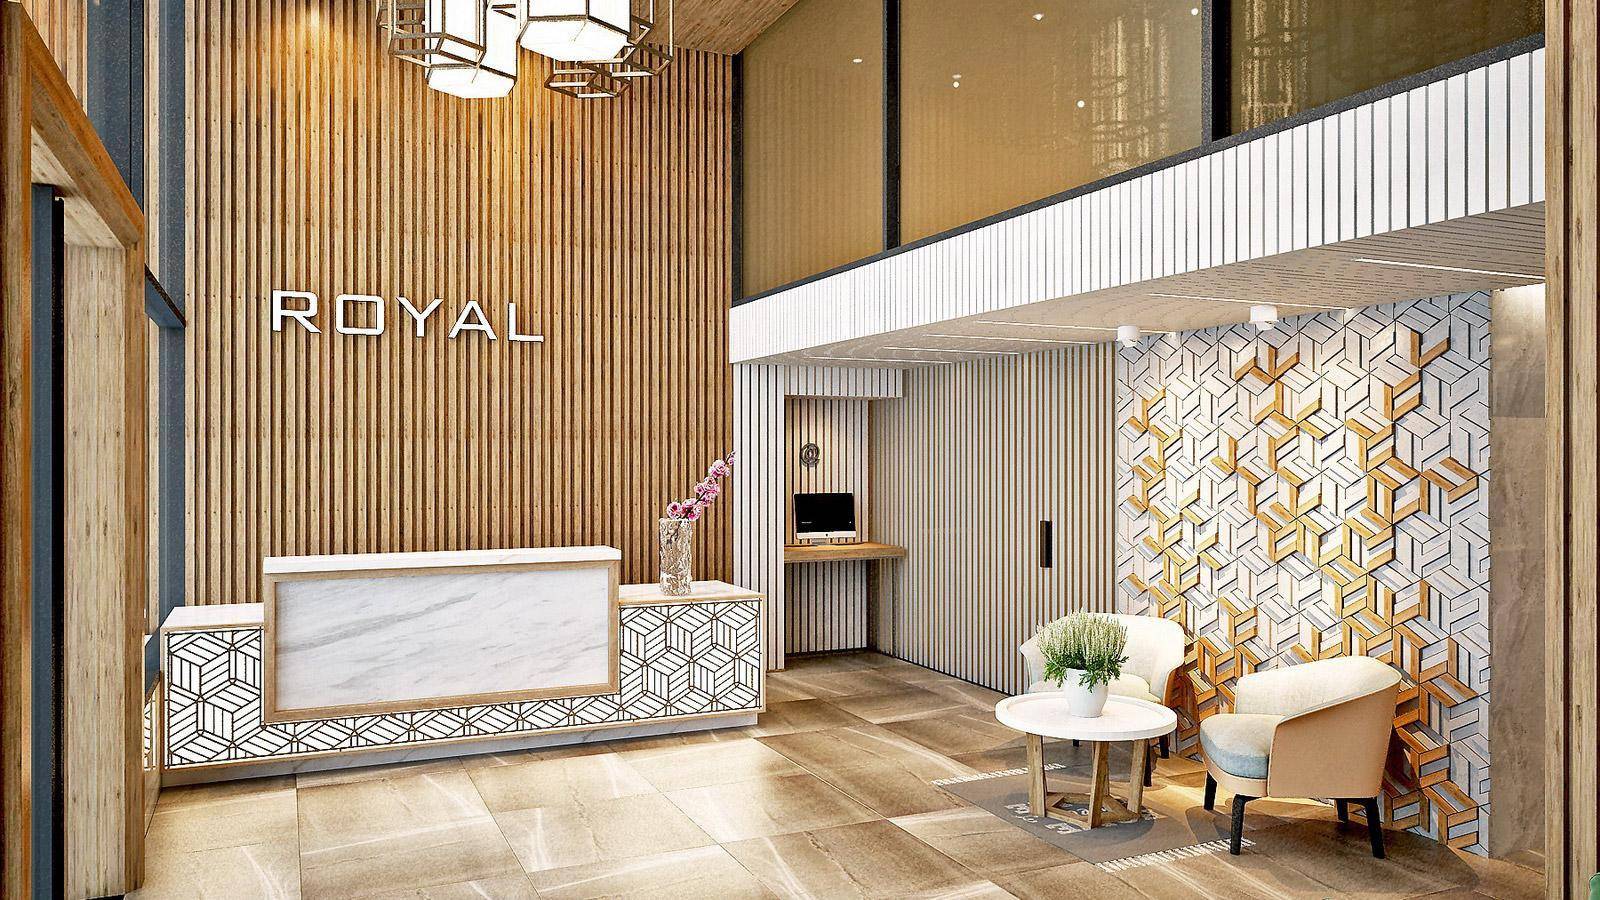 Royal HPM - Khách sạn đạt chuẩn quốc tế 4 sao (Nguồn: Internet)